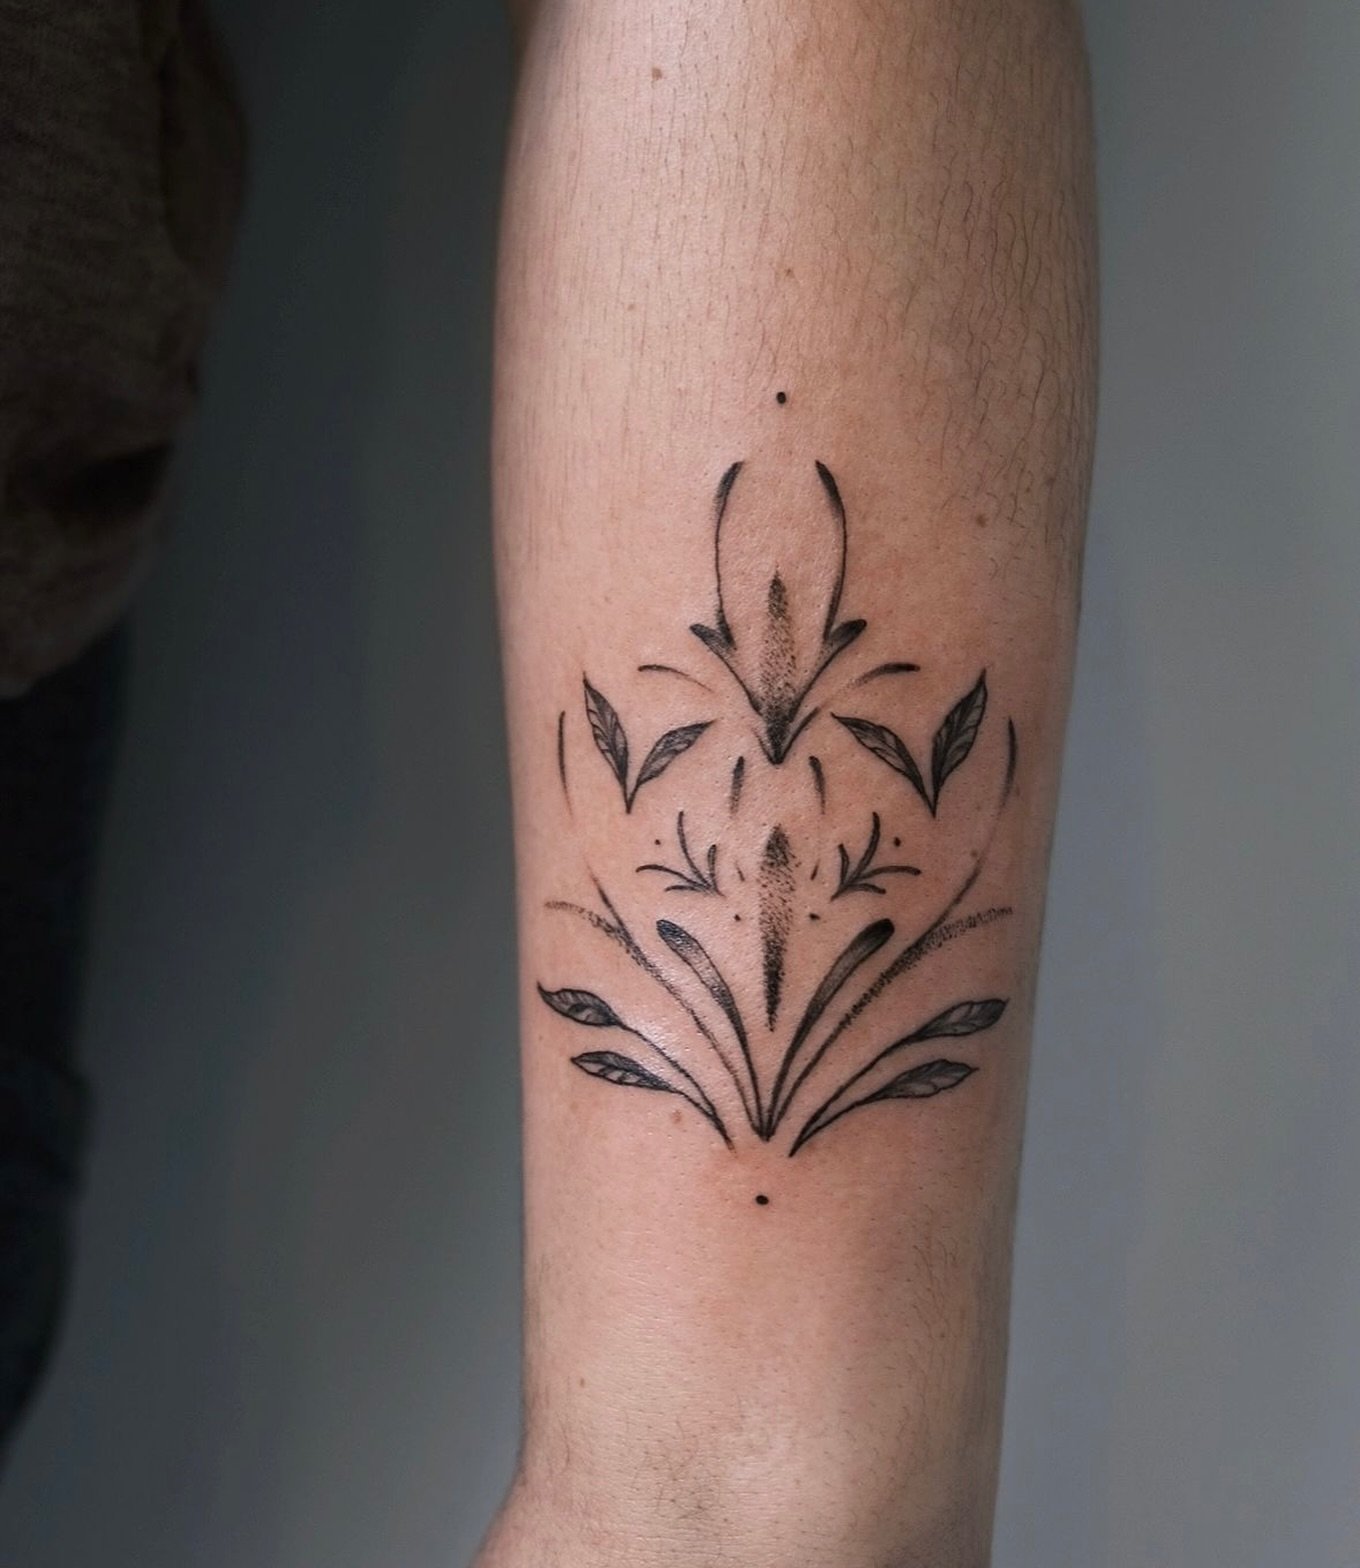 Tattoo by Reeghan
@ren.inks 

.
.
#tattoo #tattoos #blackandgreyartist #ottawa #ottawatattoo #ottawatattooartist #tattooartist #femaleartist #ottawaartist